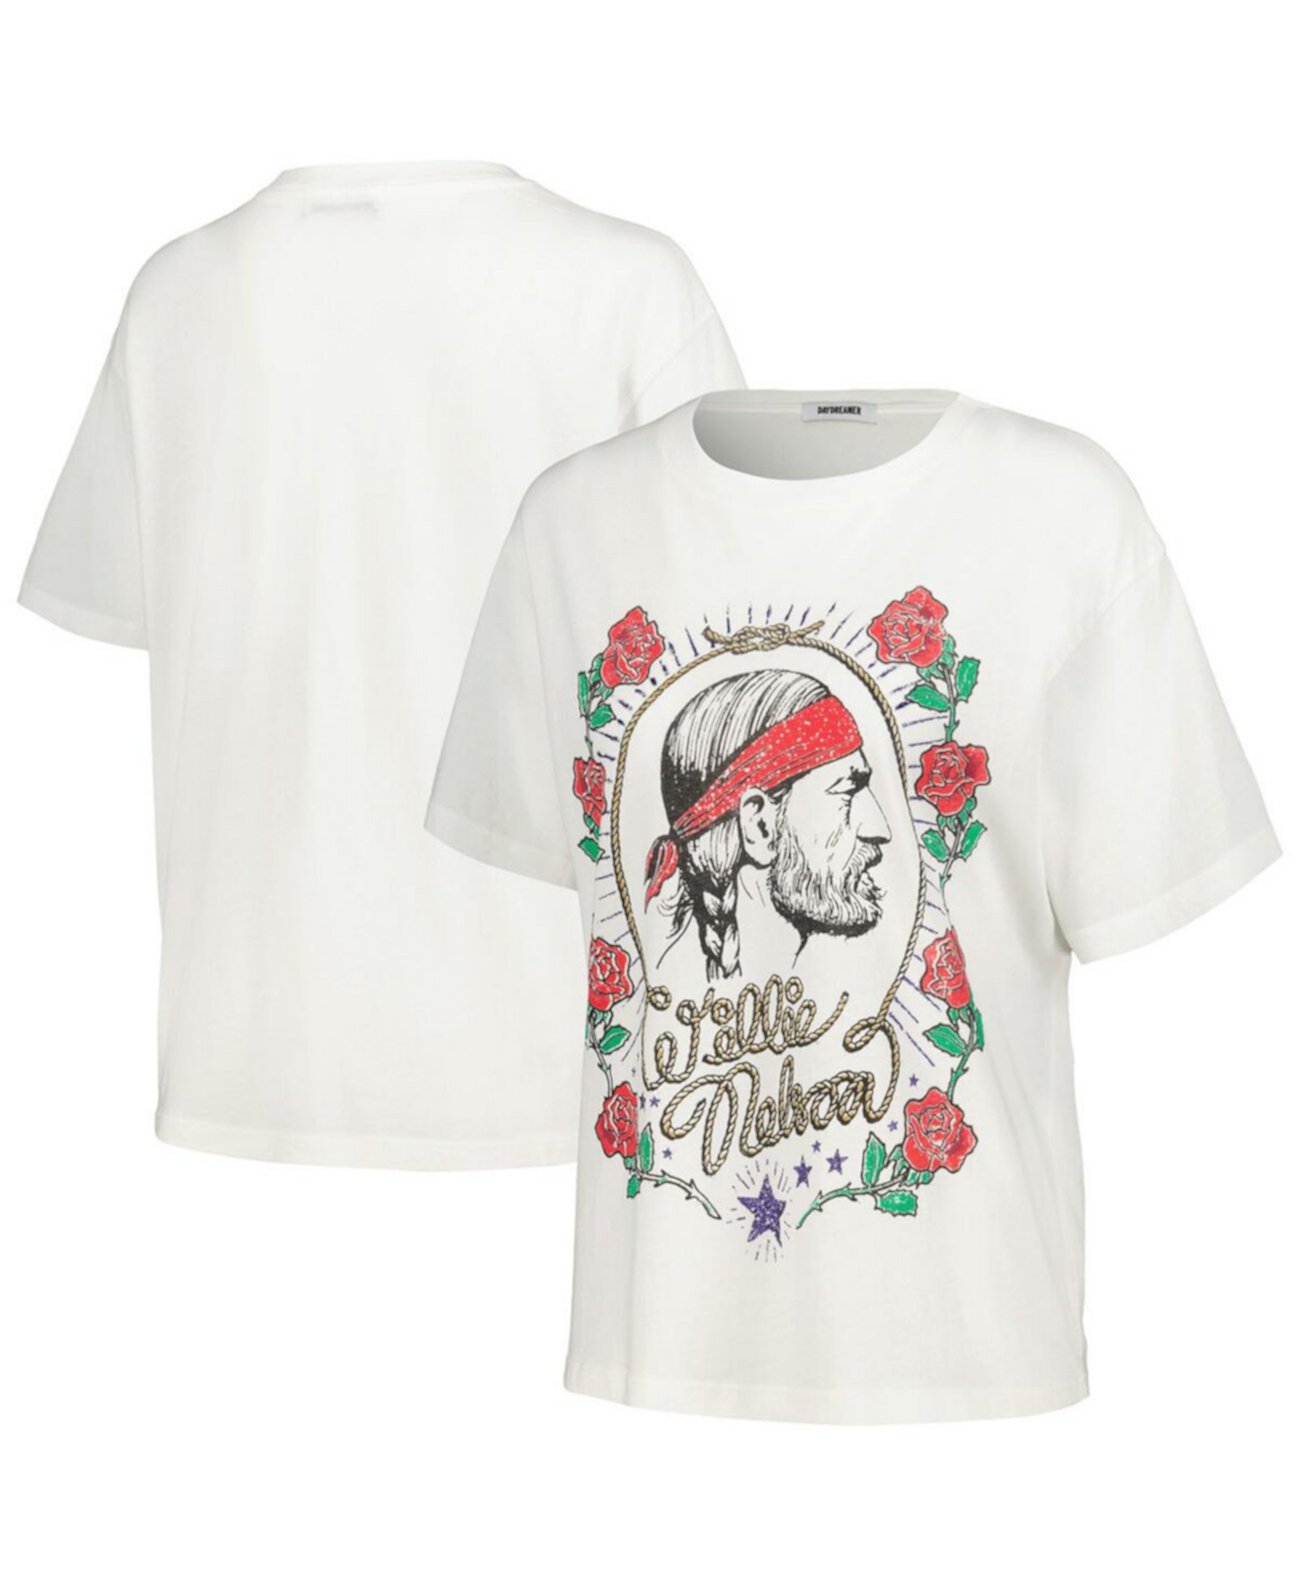 Женская белая футболка с рисунком Willie Nelson Daydreamer